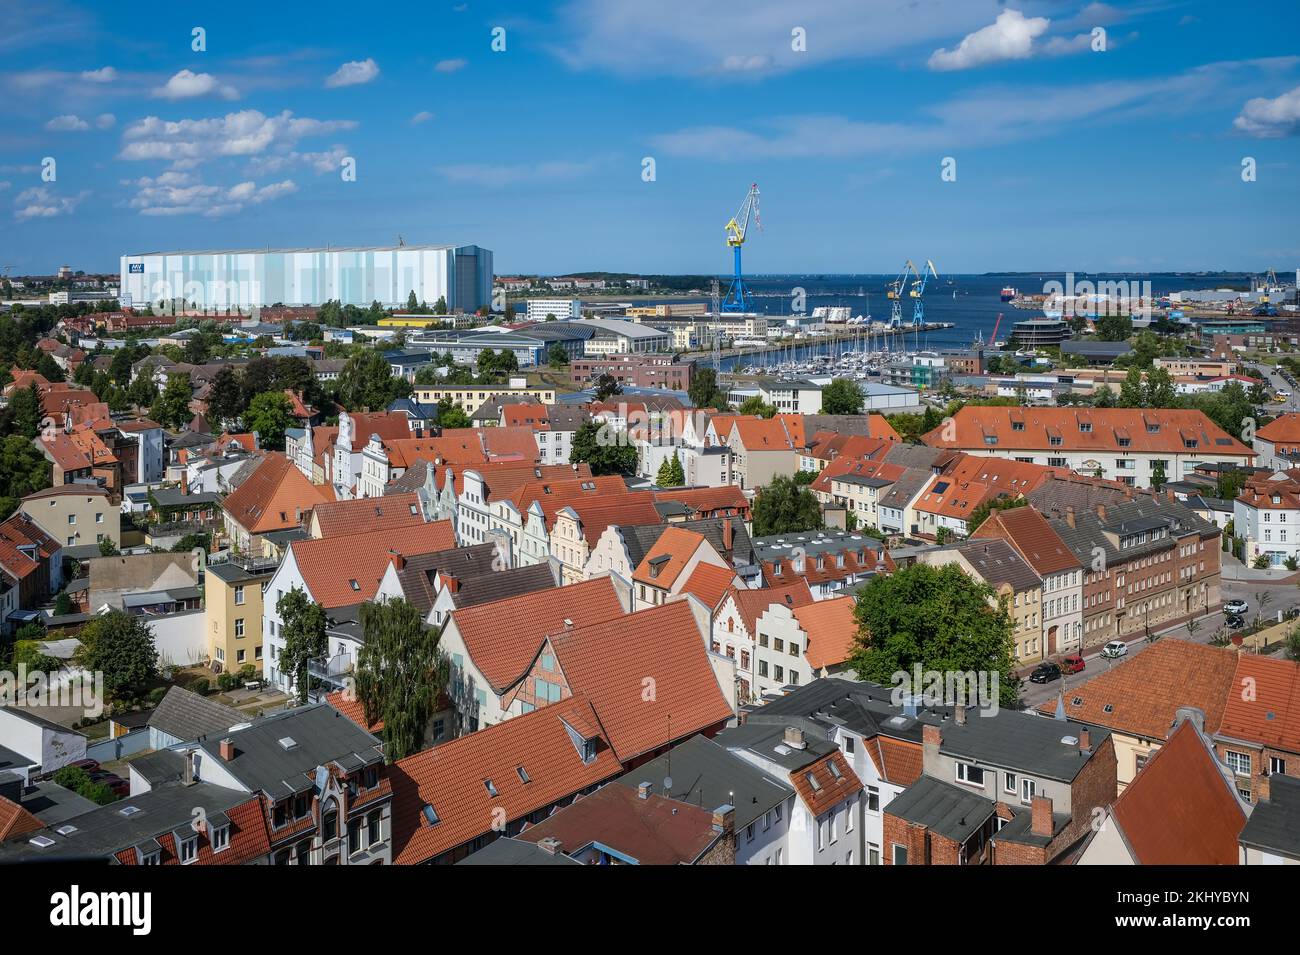 Wismar, Mecklenburg-Vorpommern, Germania - vista sulla città vecchia Wismar, dietro i cantieri navali MV Wismar-Rostock-Stralsund. Il cantiere della nave da crociera impiega ancora Foto Stock